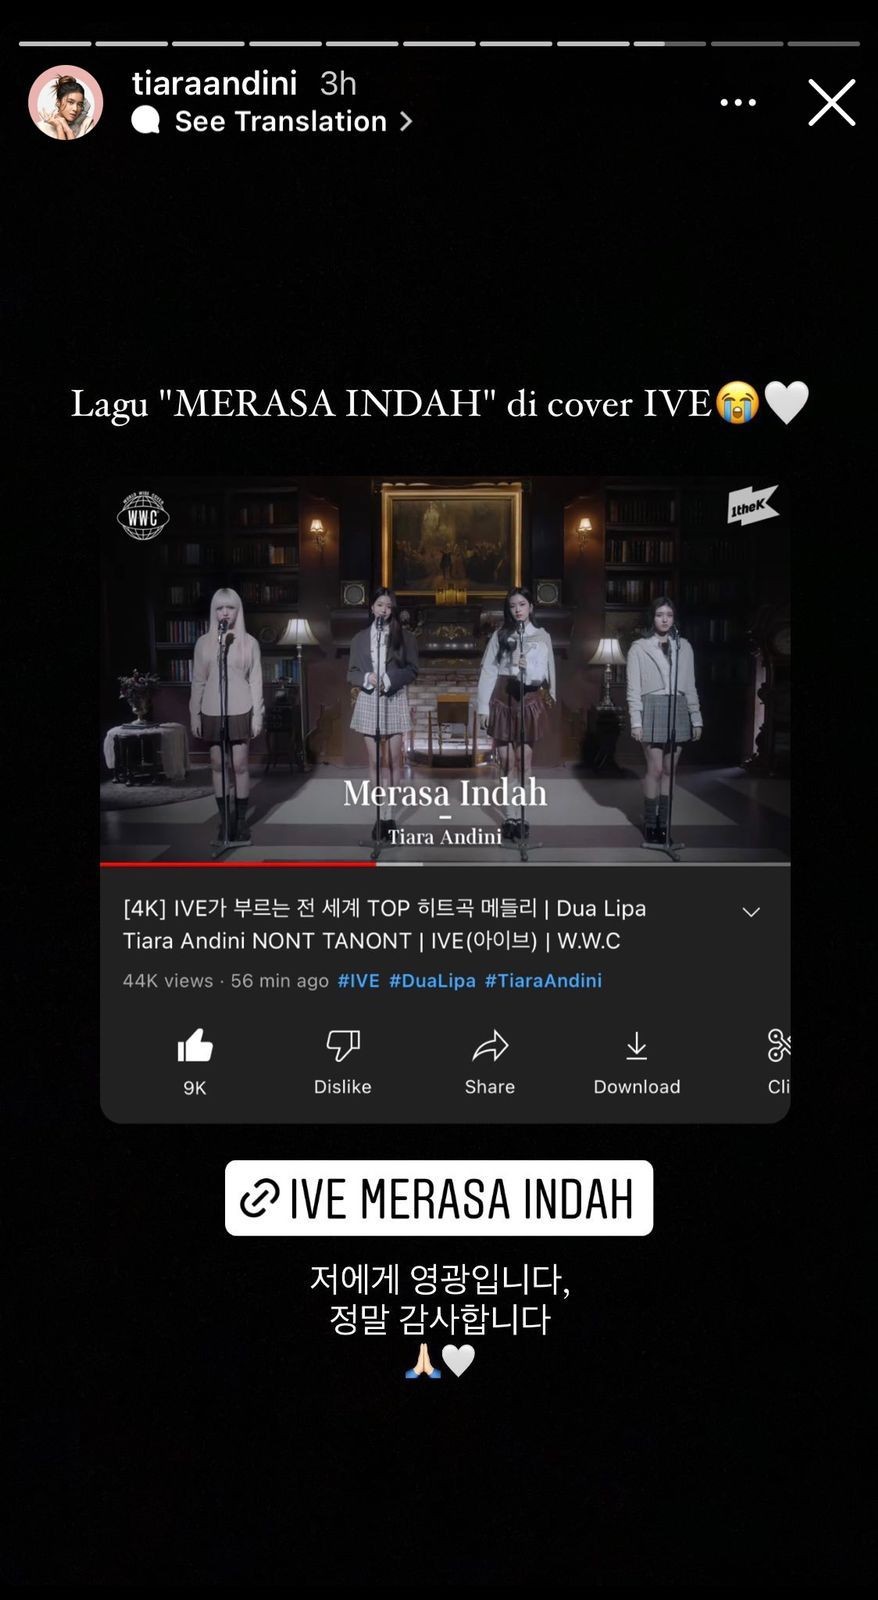 IVE Cover Lagu Merasa Indah - Tiara Andini, Fasih Banget!